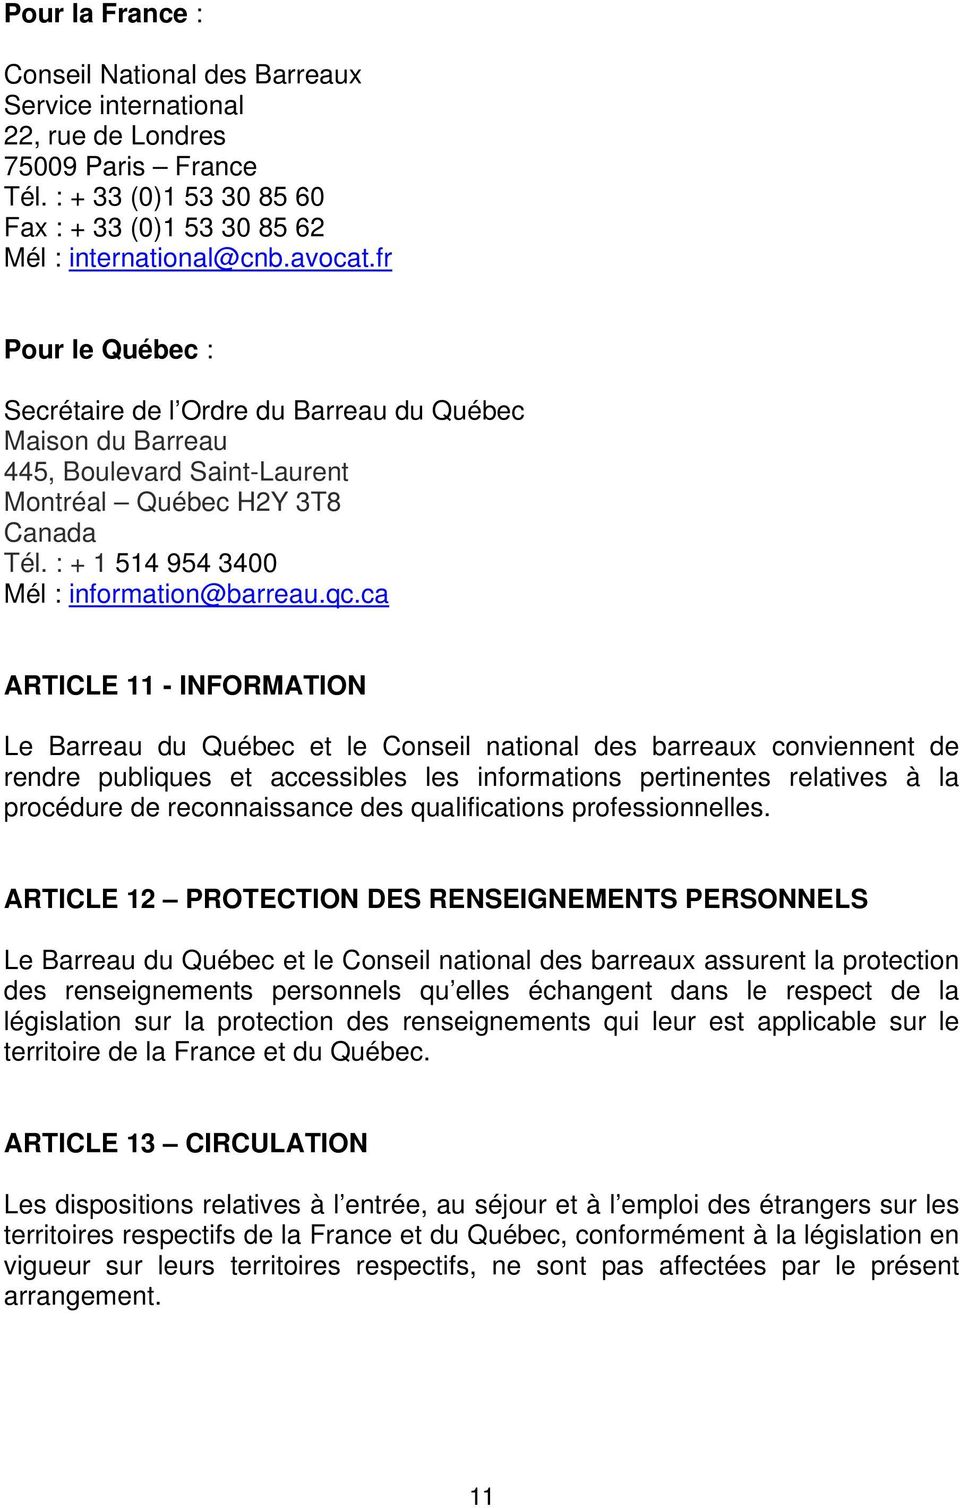 ca ARTICLE 11 - INFORMATION Le Barreau du Québec et le Conseil national des barreaux conviennent de rendre publiques et accessibles les informations pertinentes relatives à la procédure de